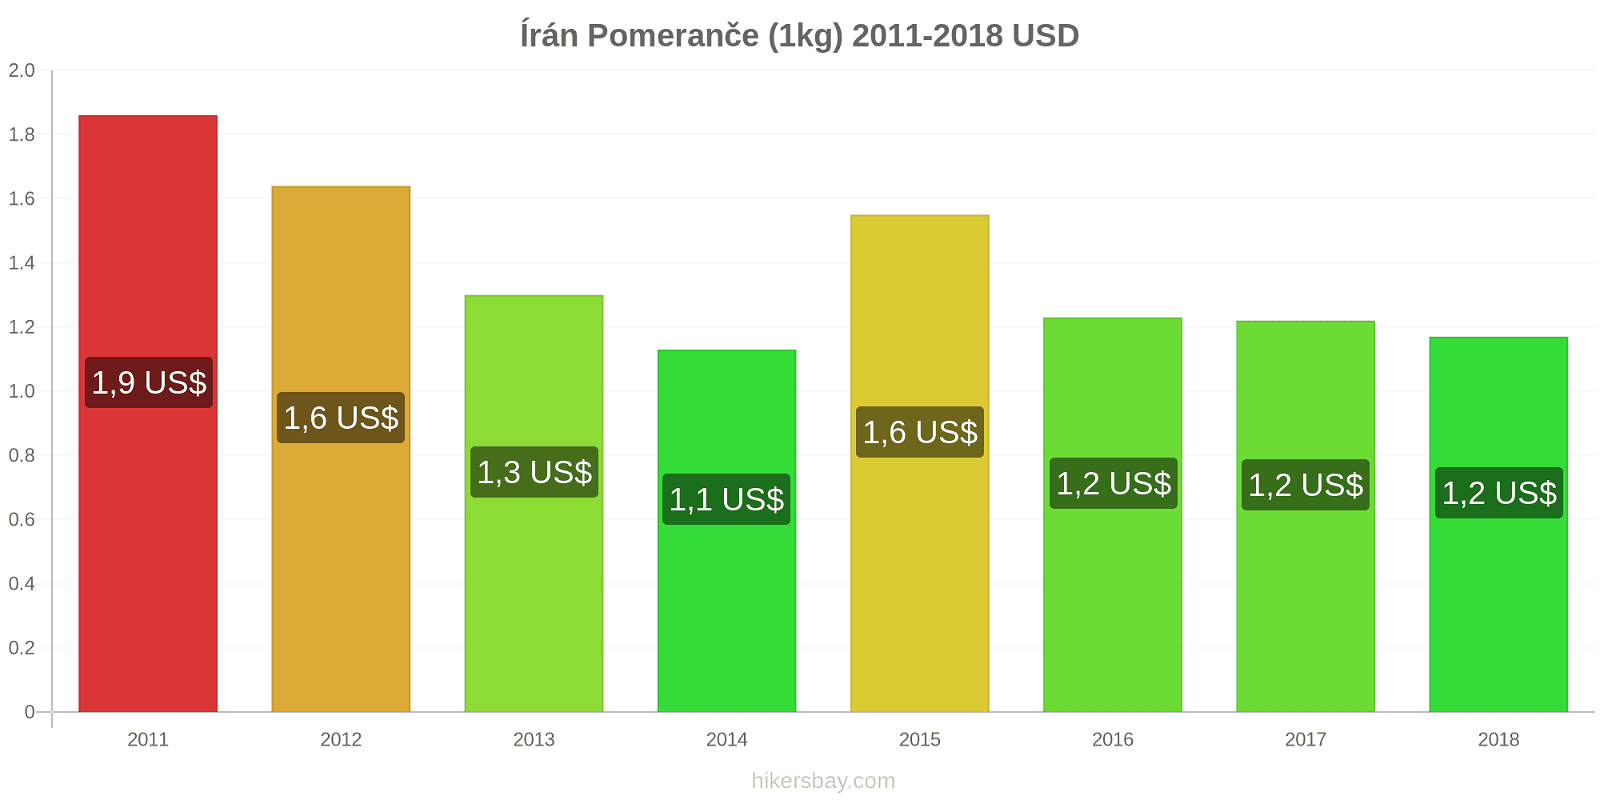 Írán změny cen Pomeranče (1kg) hikersbay.com